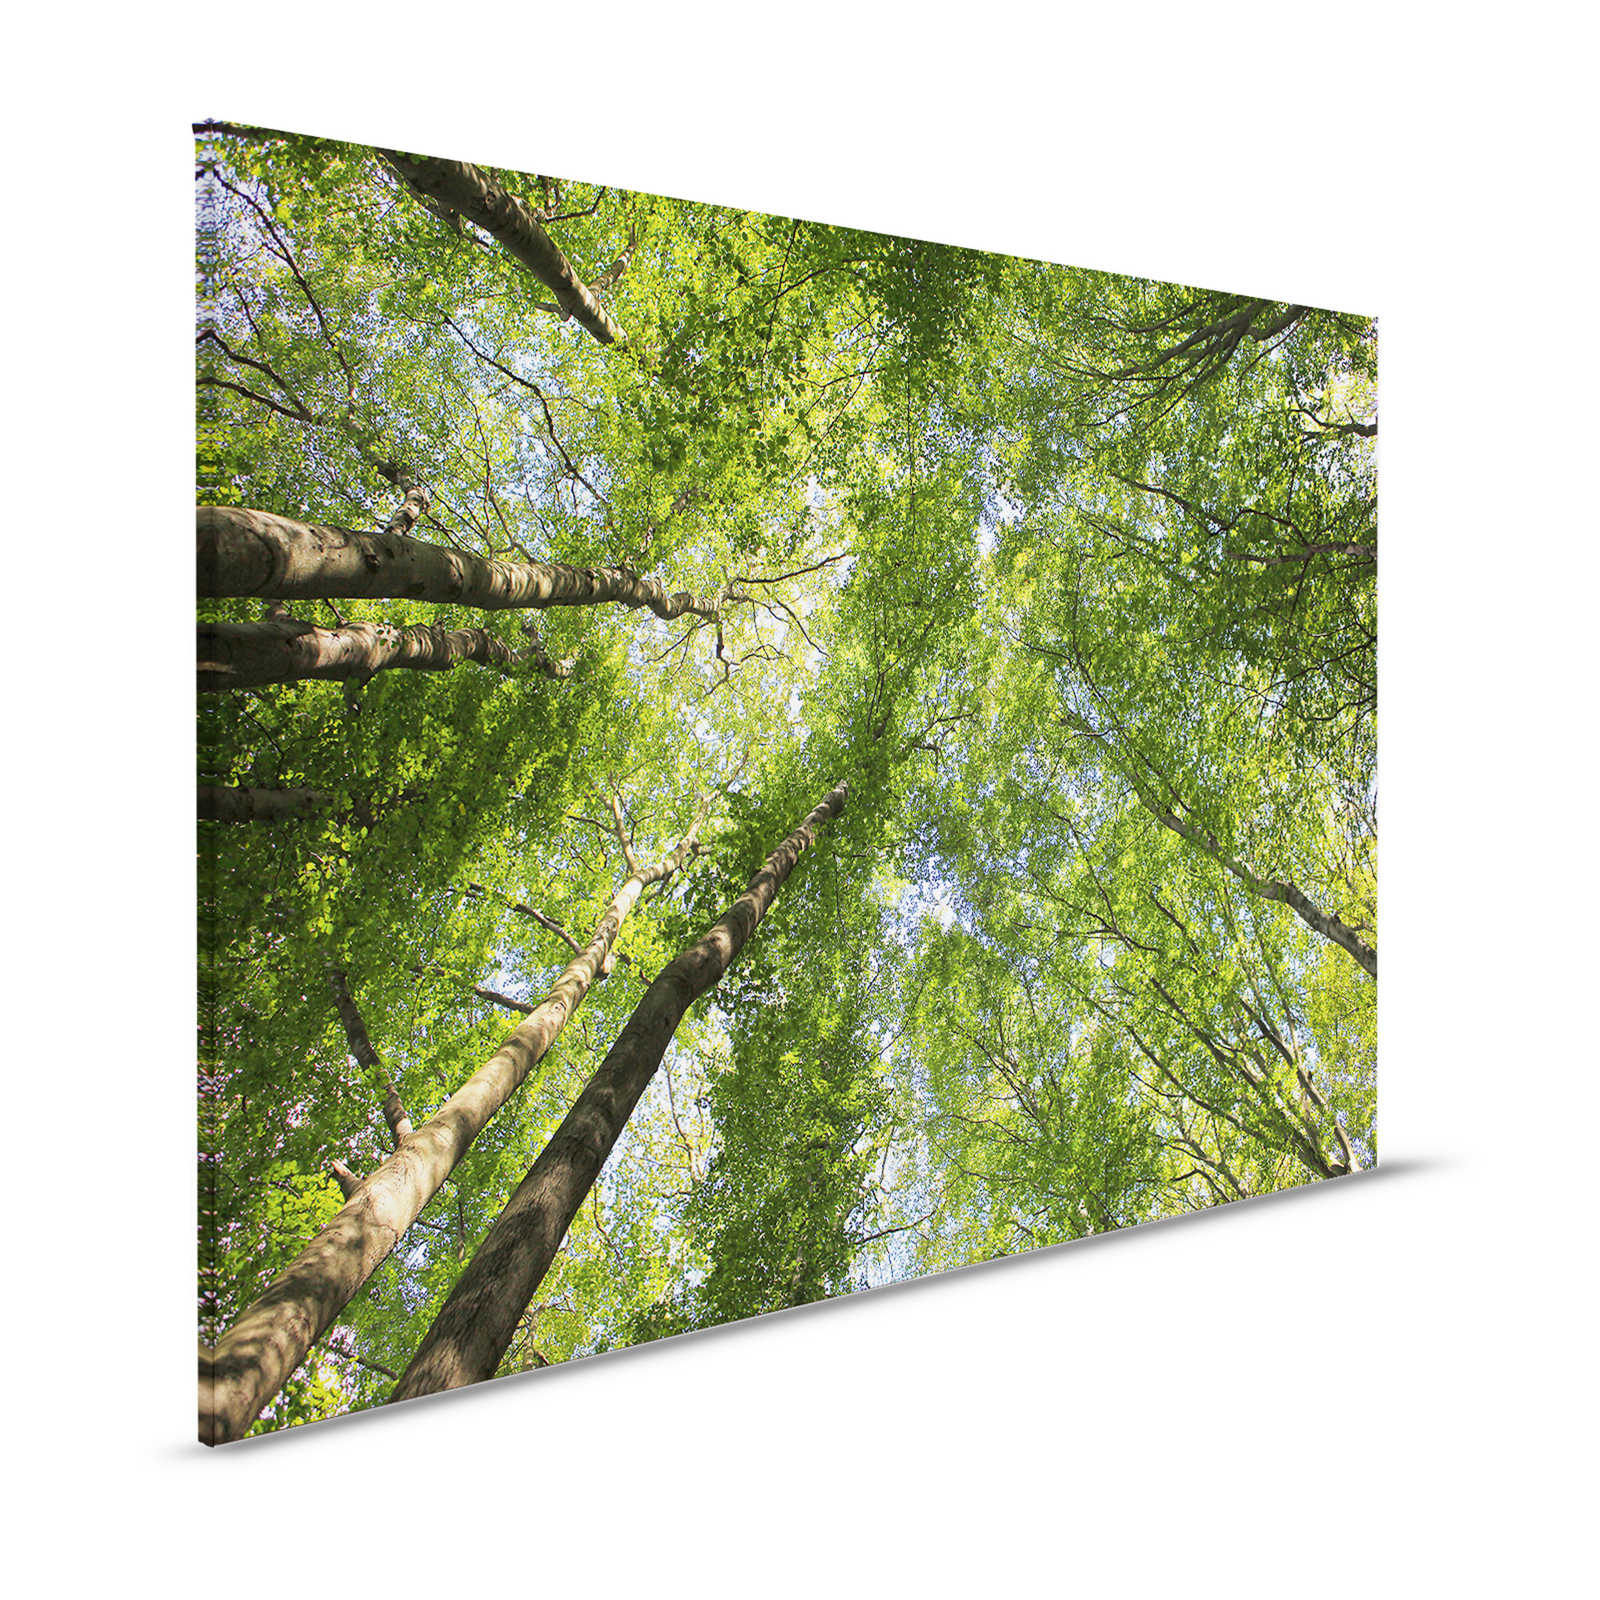 Quadro su tela con cime di boschi di latifoglie - 1,20 m x 0,80 m
